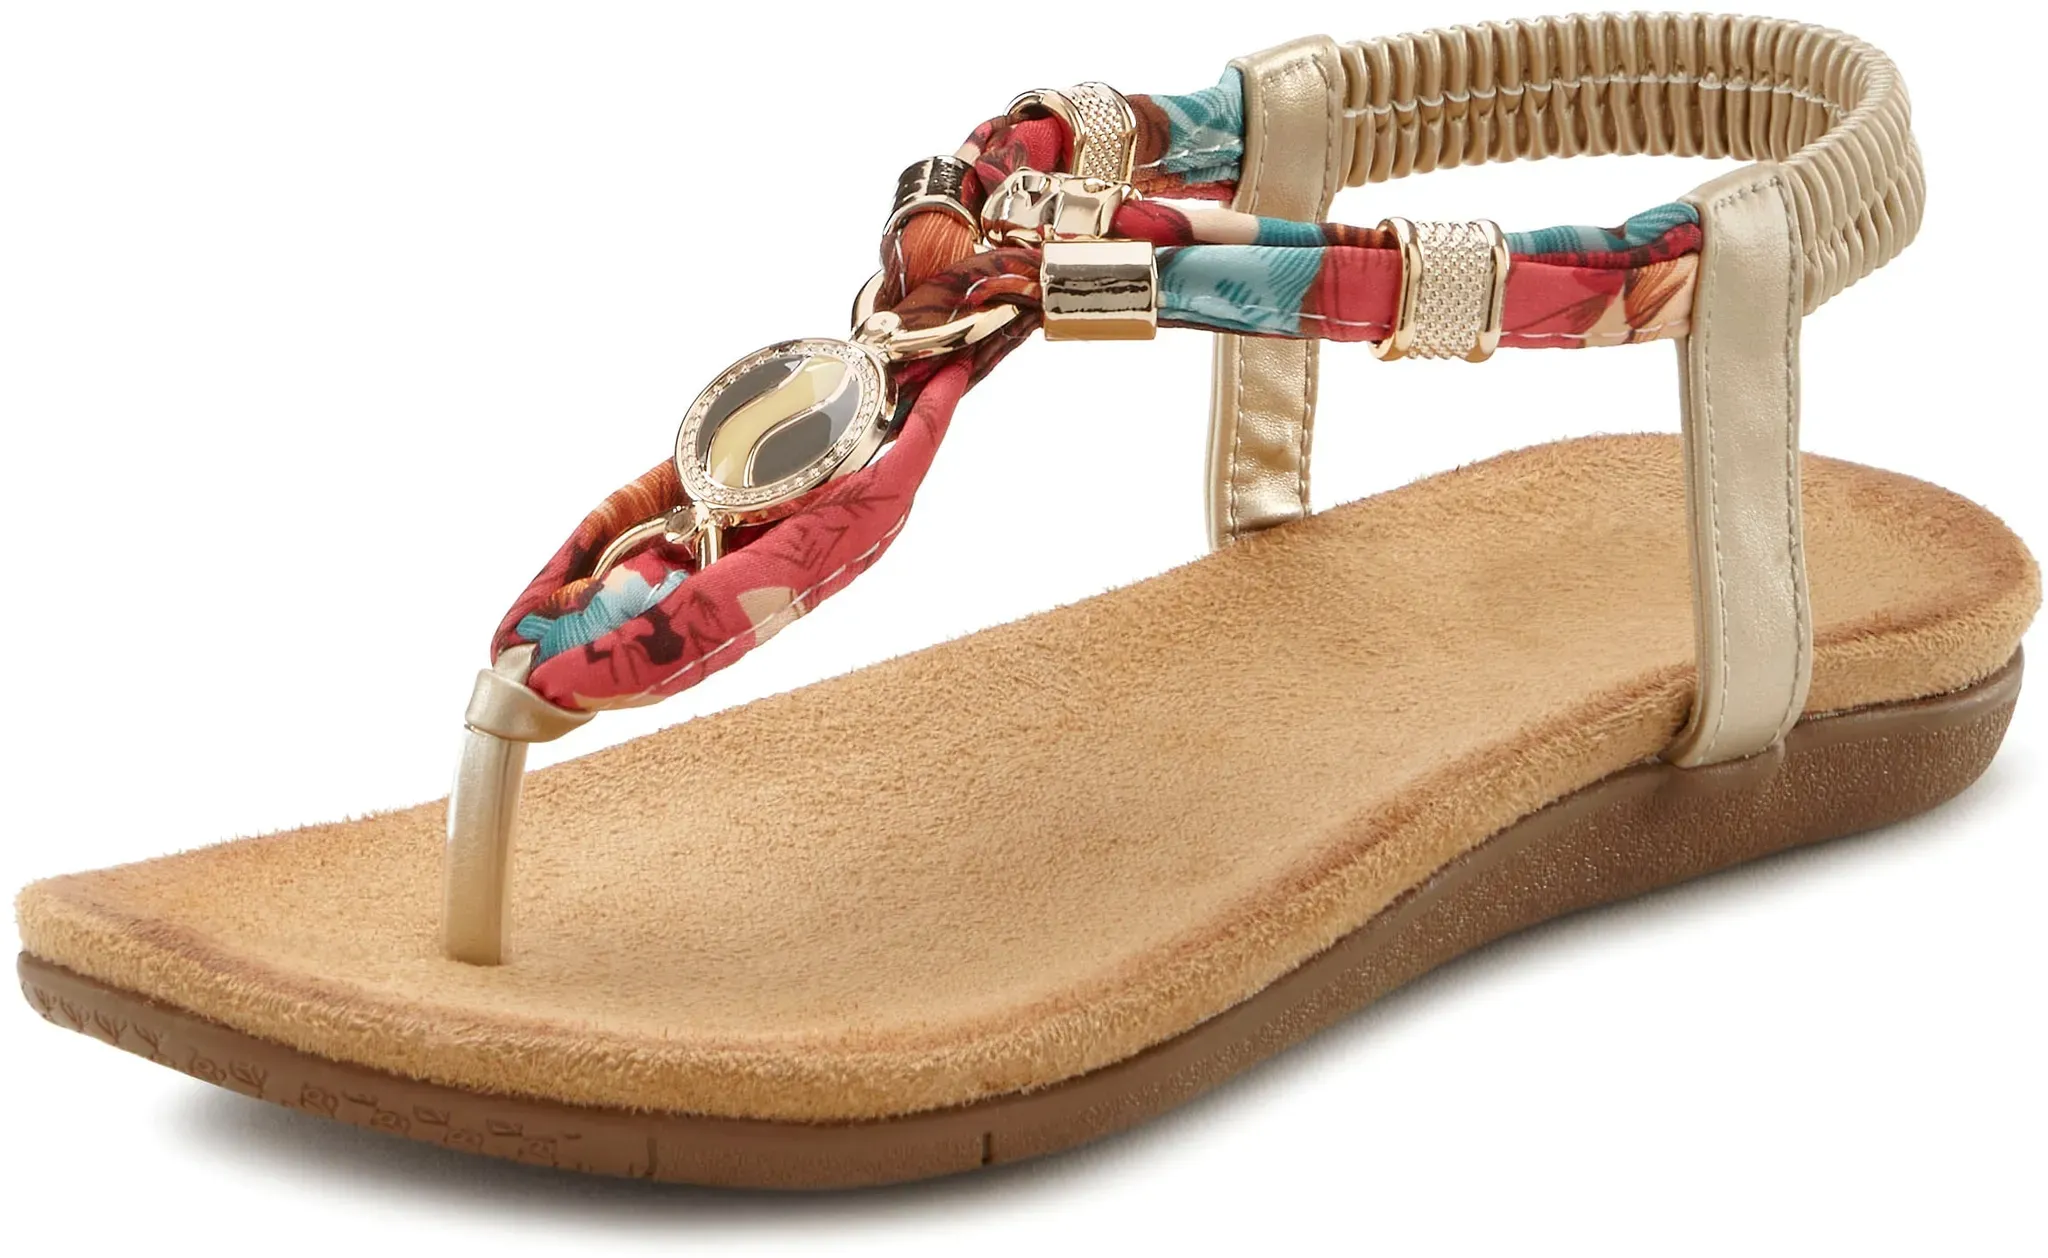 Zehentrenner LASCANA Gr. 39, bunt Damen Schuhe Strandaccessoires Sandale mit elastischen Riemchen und modischer Farbgebung